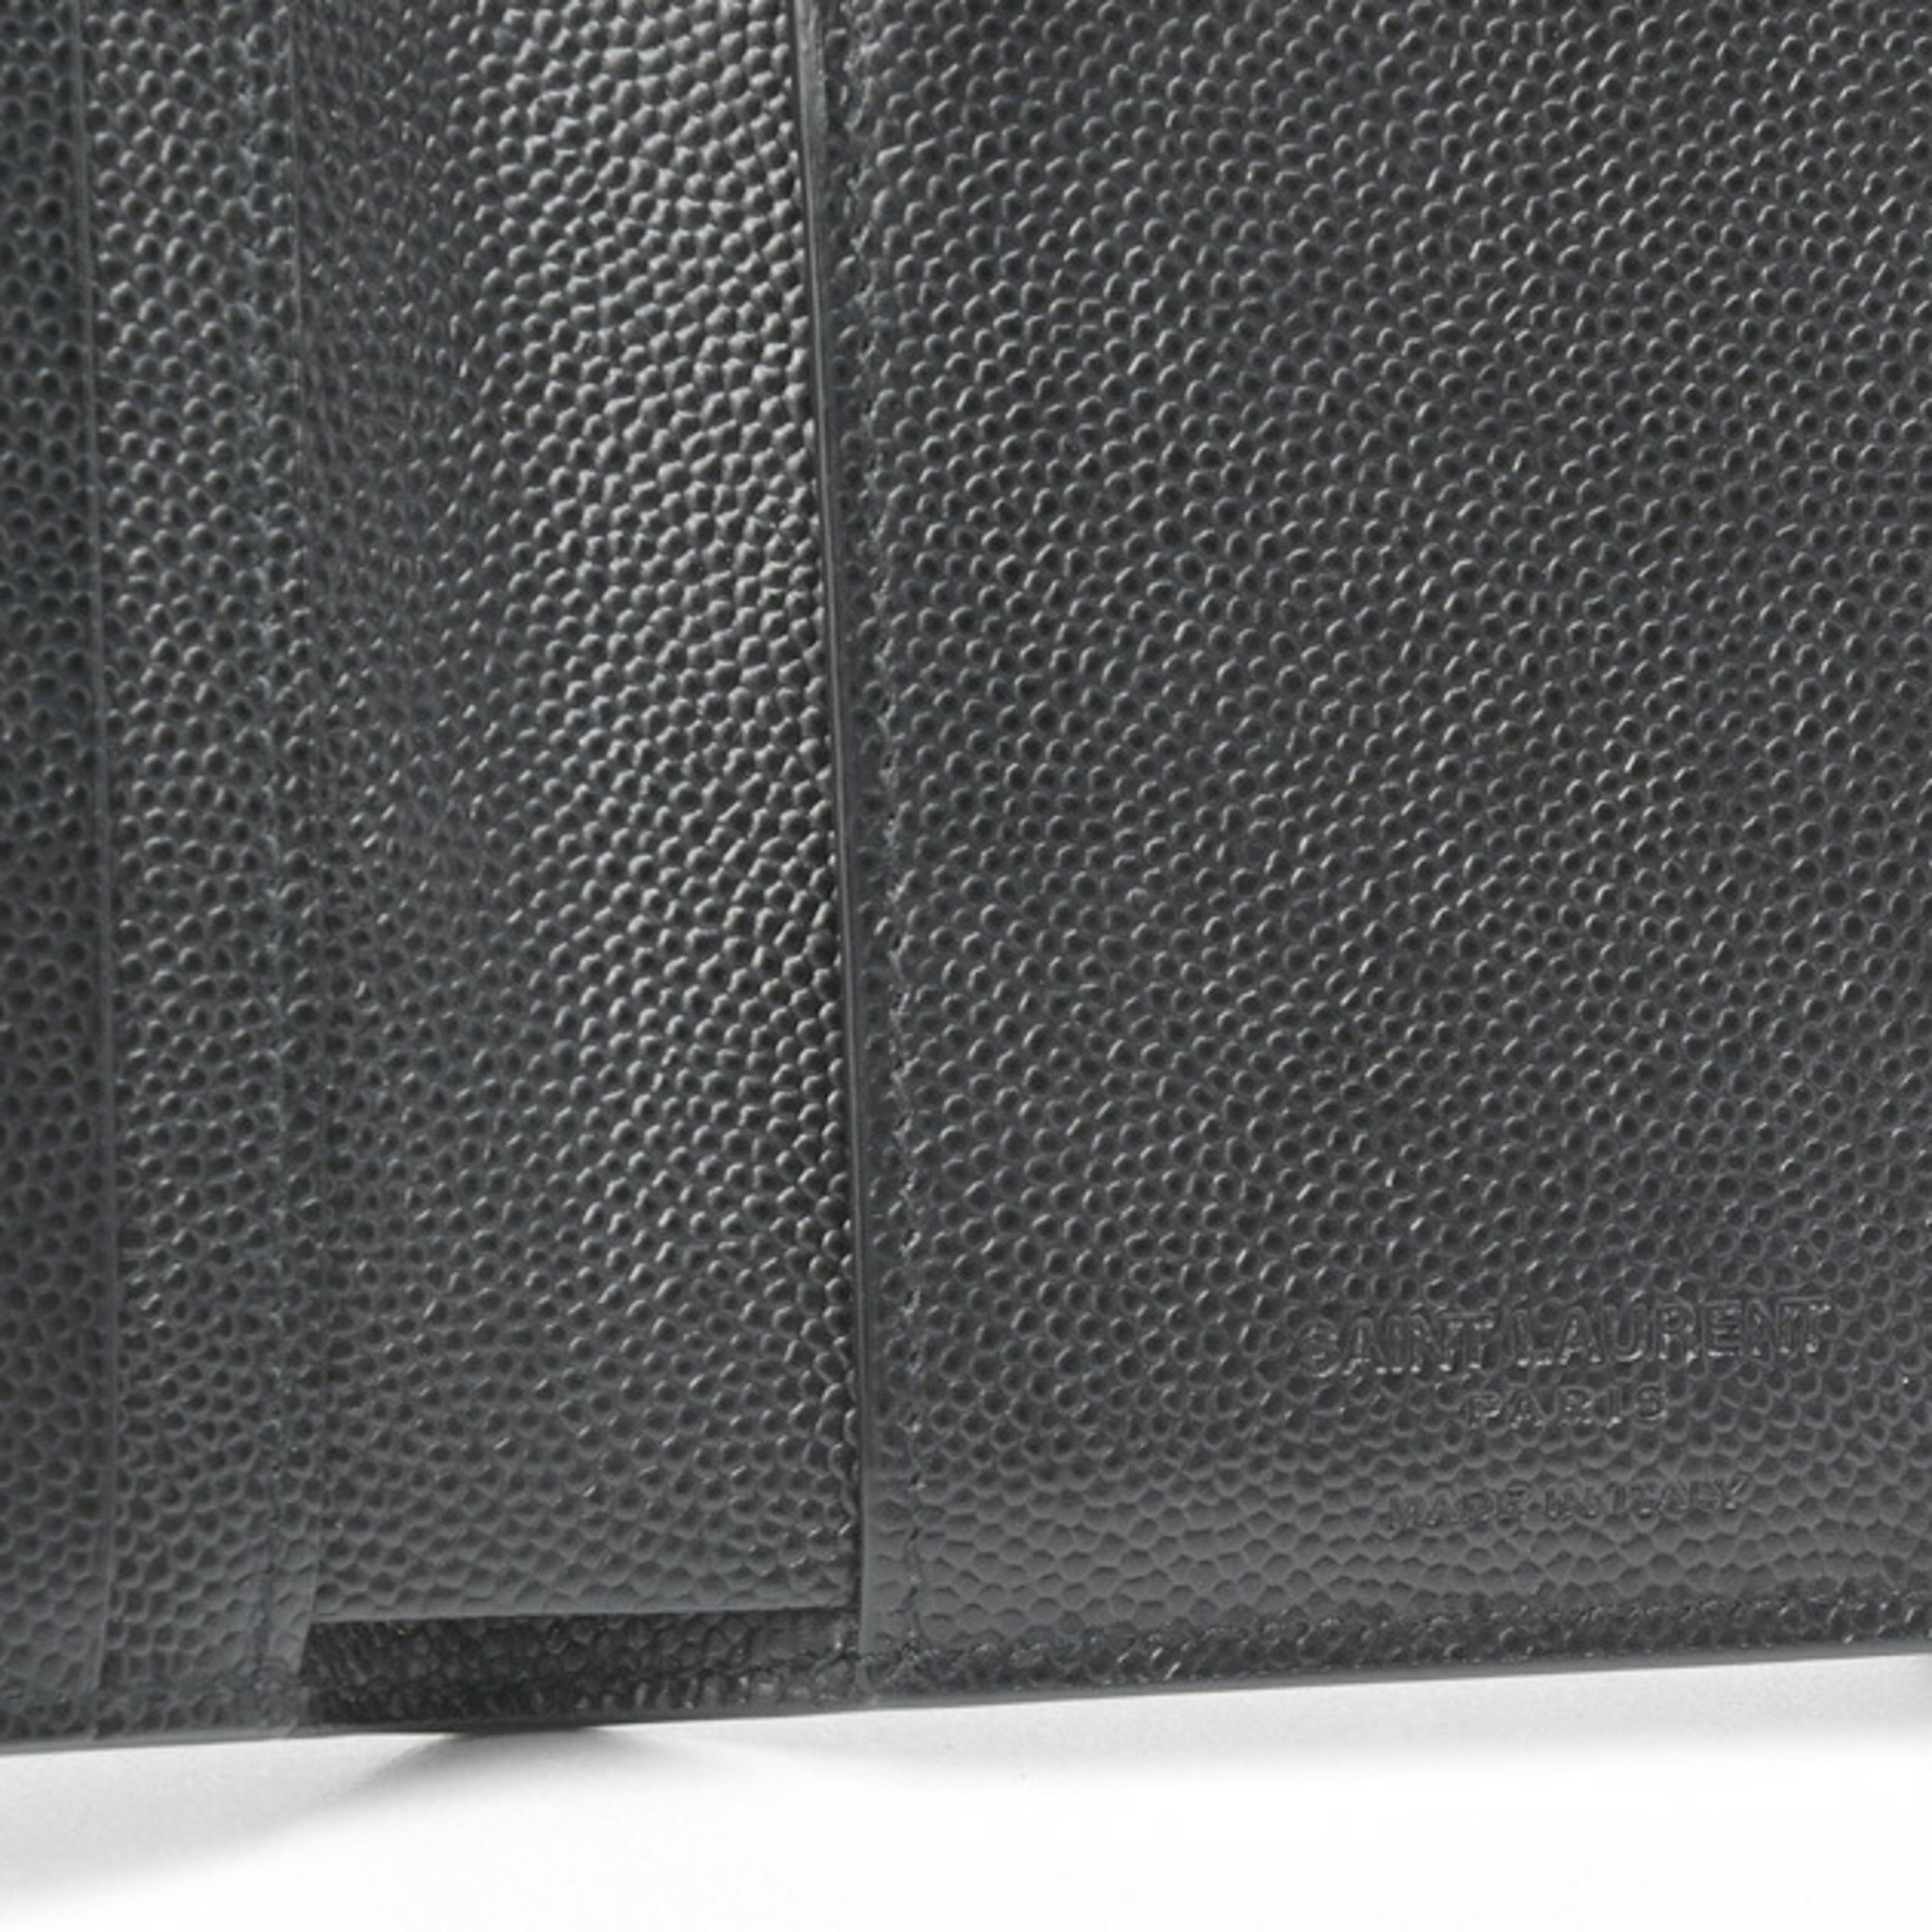 Saint Laurent Credit Card Wallet 607051 Grain de Poudre Embossed Leather